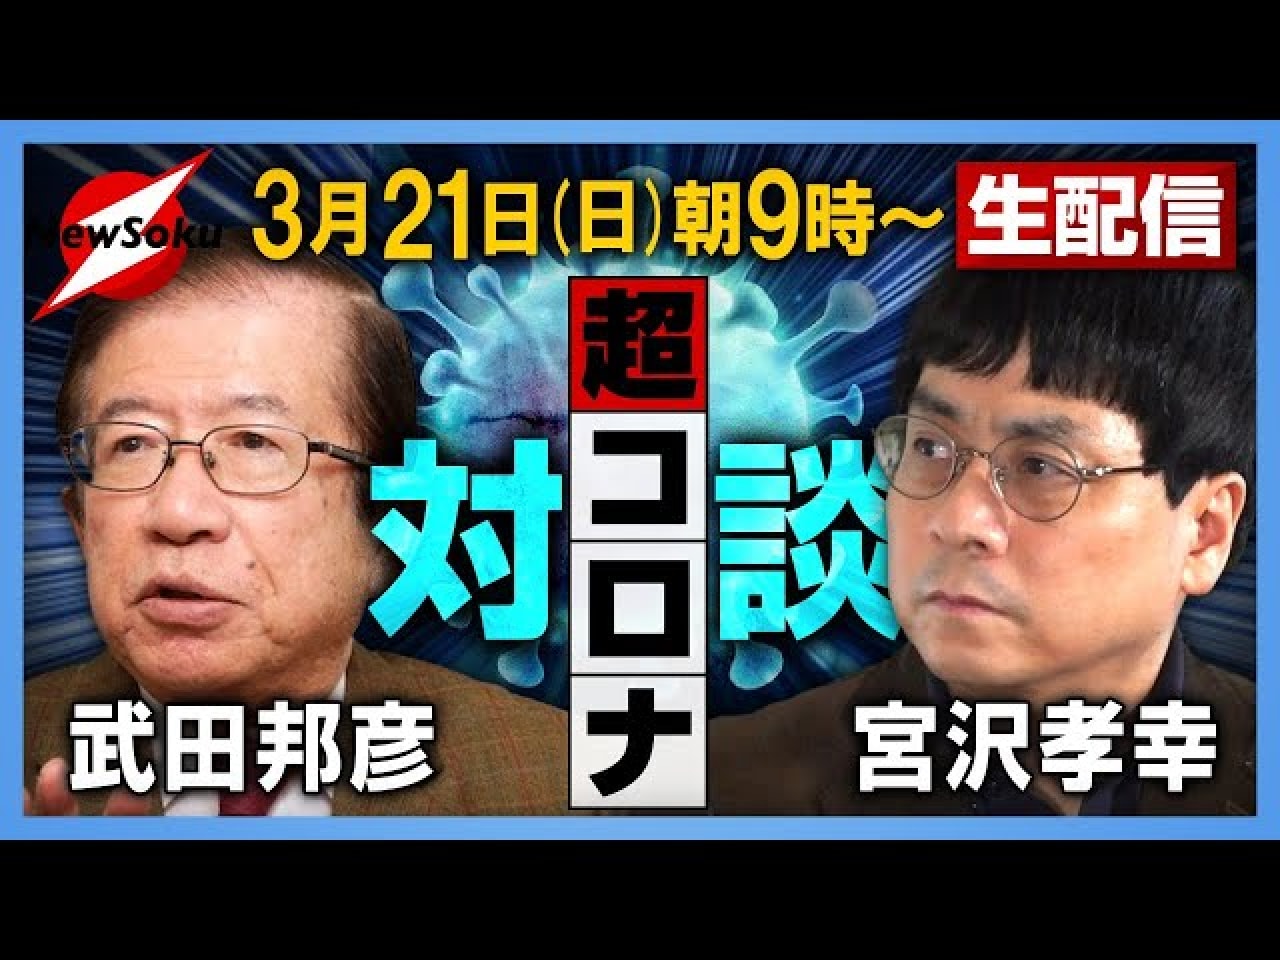 日本はワクチンの必要ない 50過ぎた男は生きてる意味ない 武田特任教授の発言に 許されない 怒りの声も ニコニコニュース